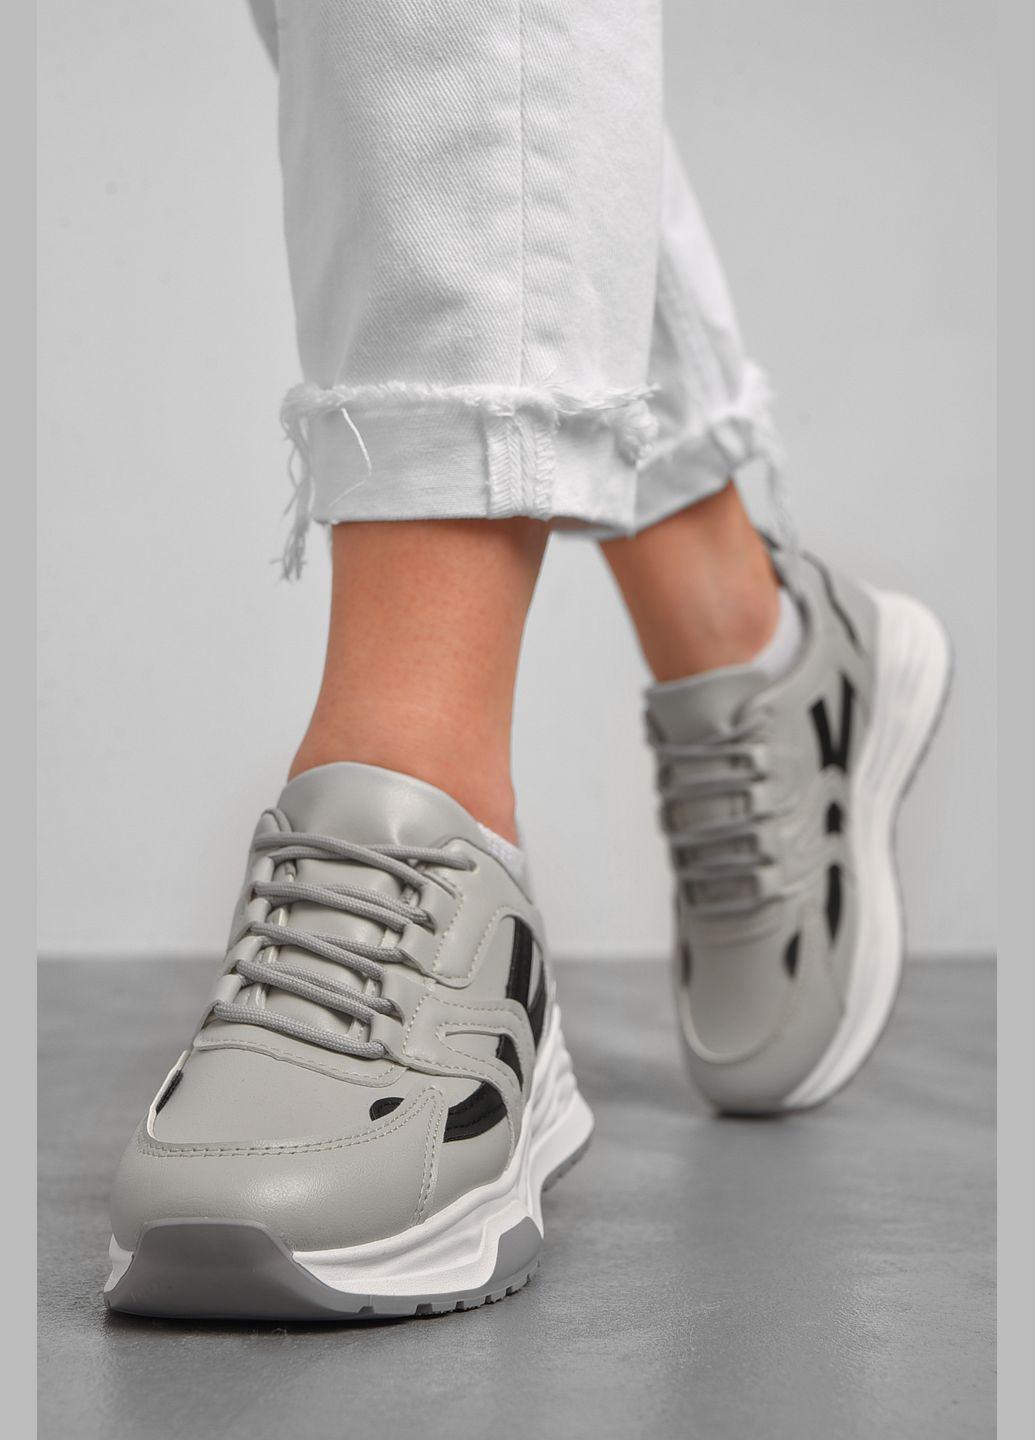 Сірі осінні кросівки жіночі сірого кольору на шнурівці Let's Shop